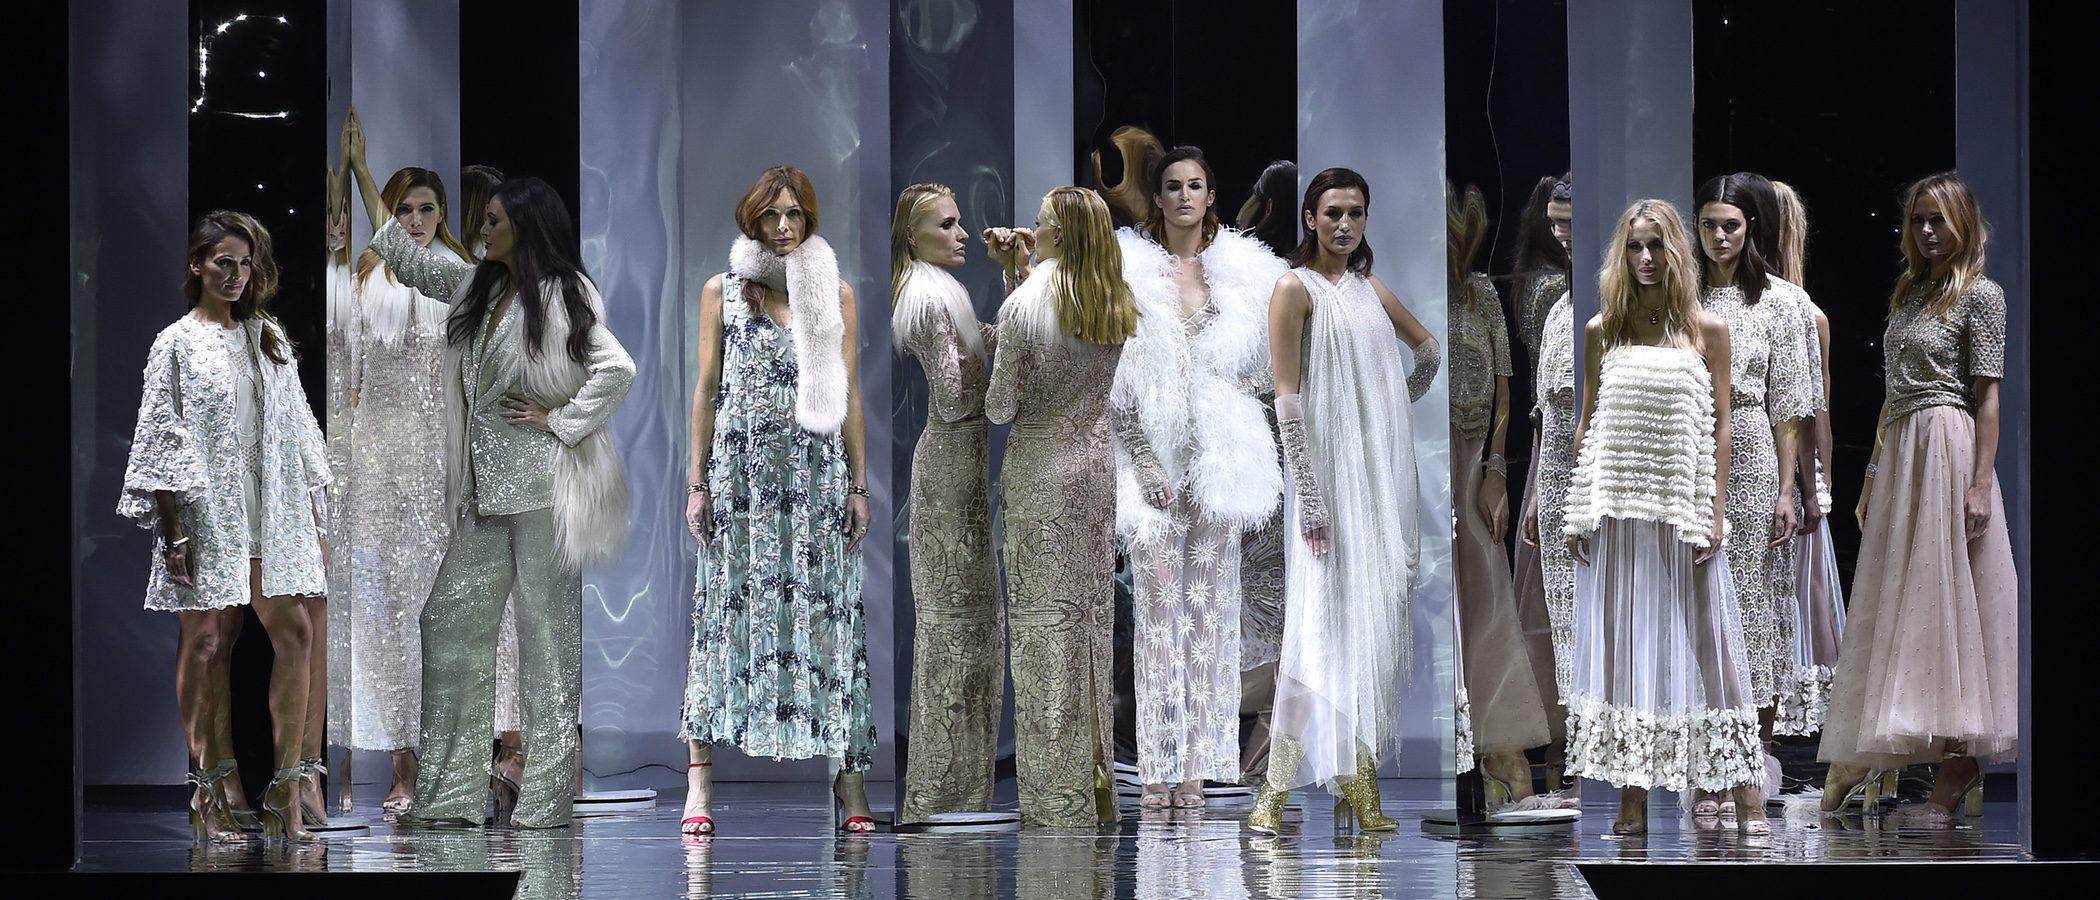 Duyos reúne a diez modelos icónicas en la celebración de su 20 aniversario sobre la Madrid Fashion Week